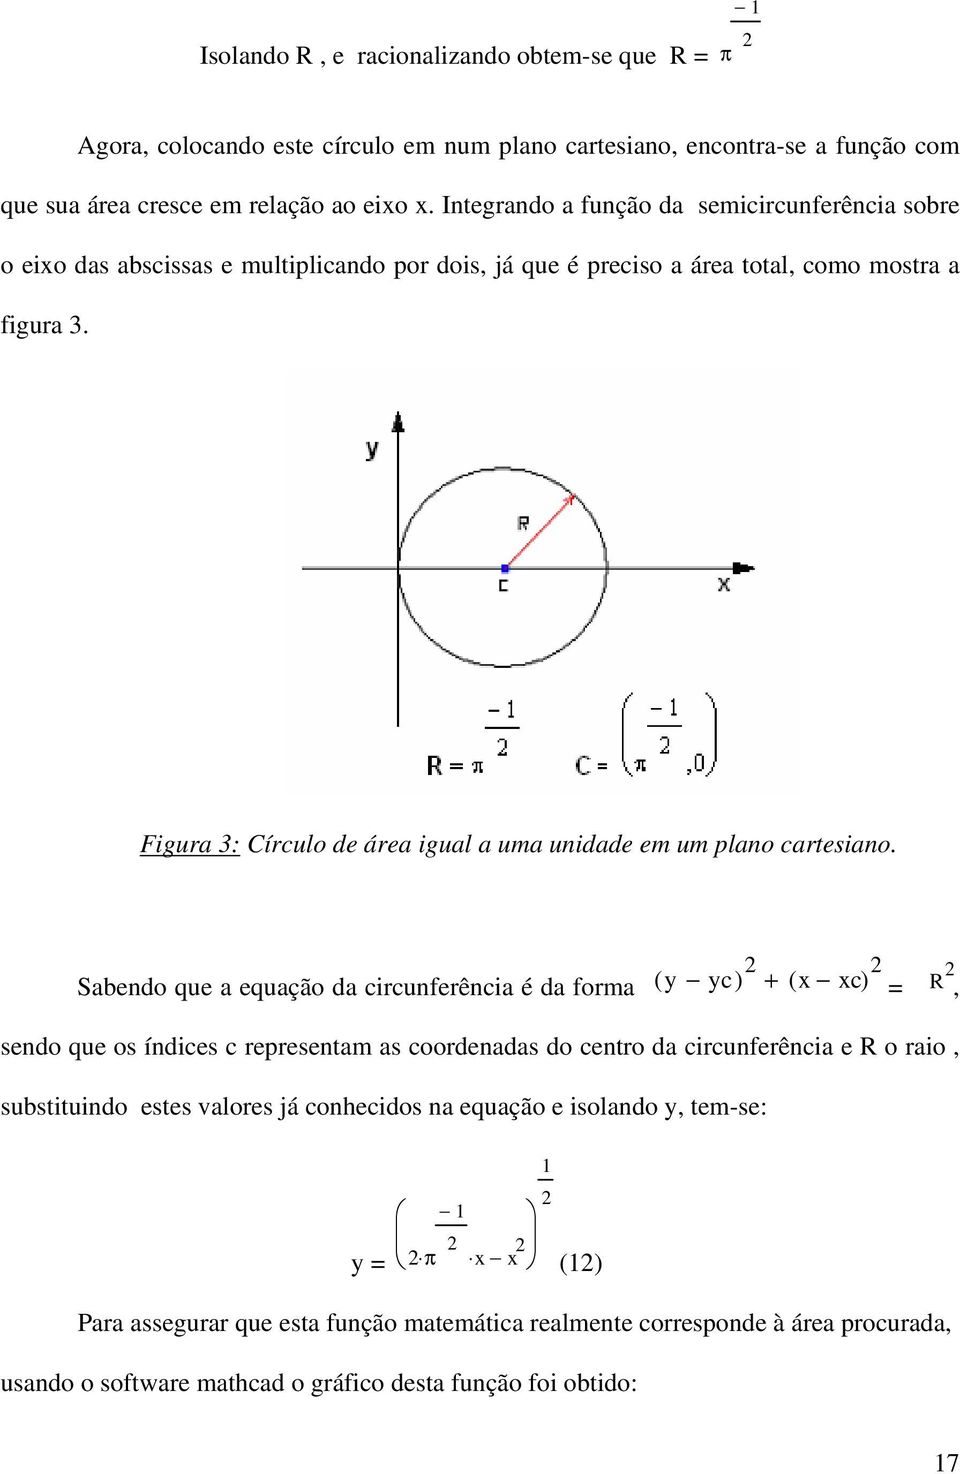 Figura 3: Círculo de área igual a uma unidade em um plano cartesiano.